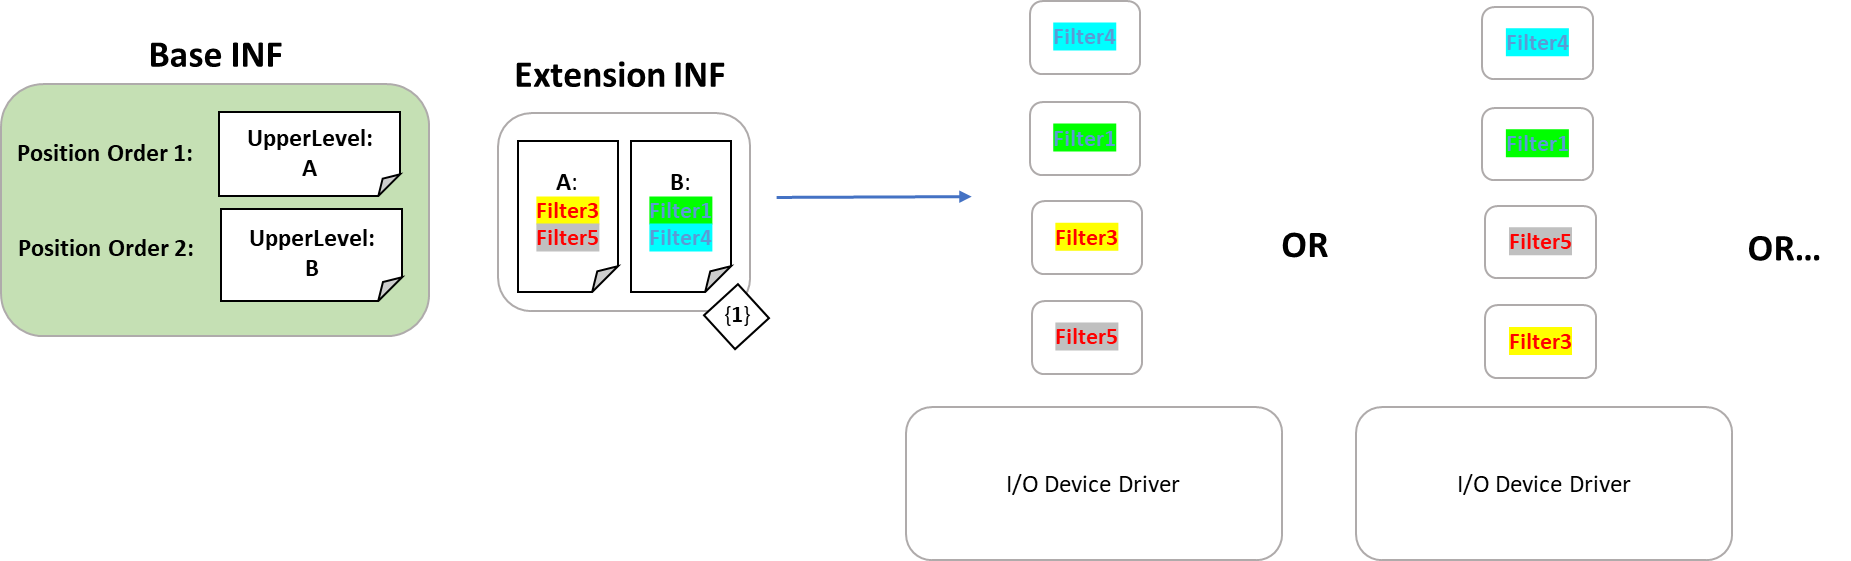 设备驱动程序的安装以设备堆栈顺序显示，其中合并了筛选器驱动程序列表，同时遵循所需的位置和排序。